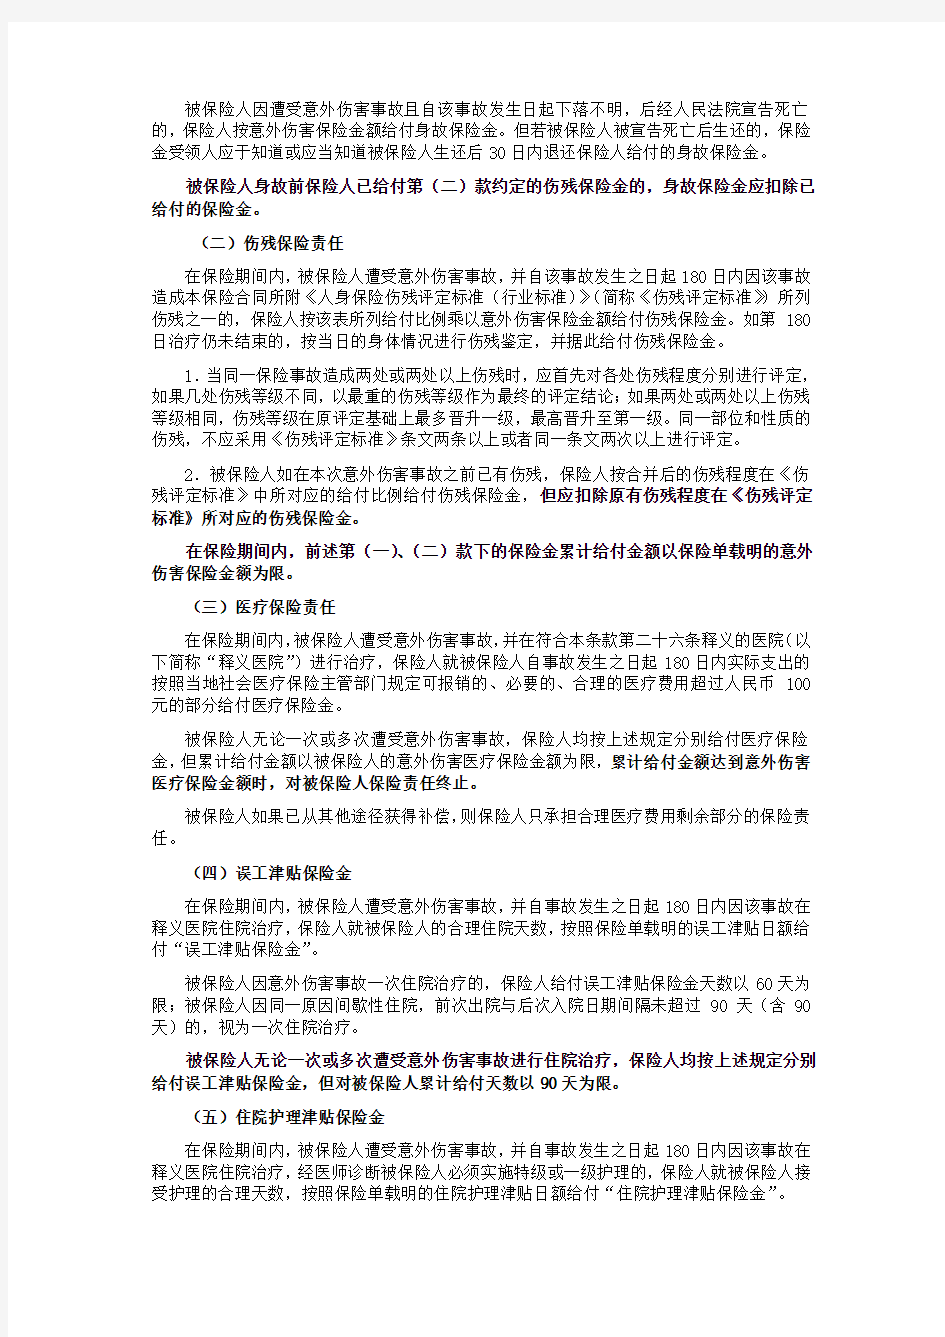 中国平安财产保险股份有限公司平安个人意外伤害保险(B款)条款